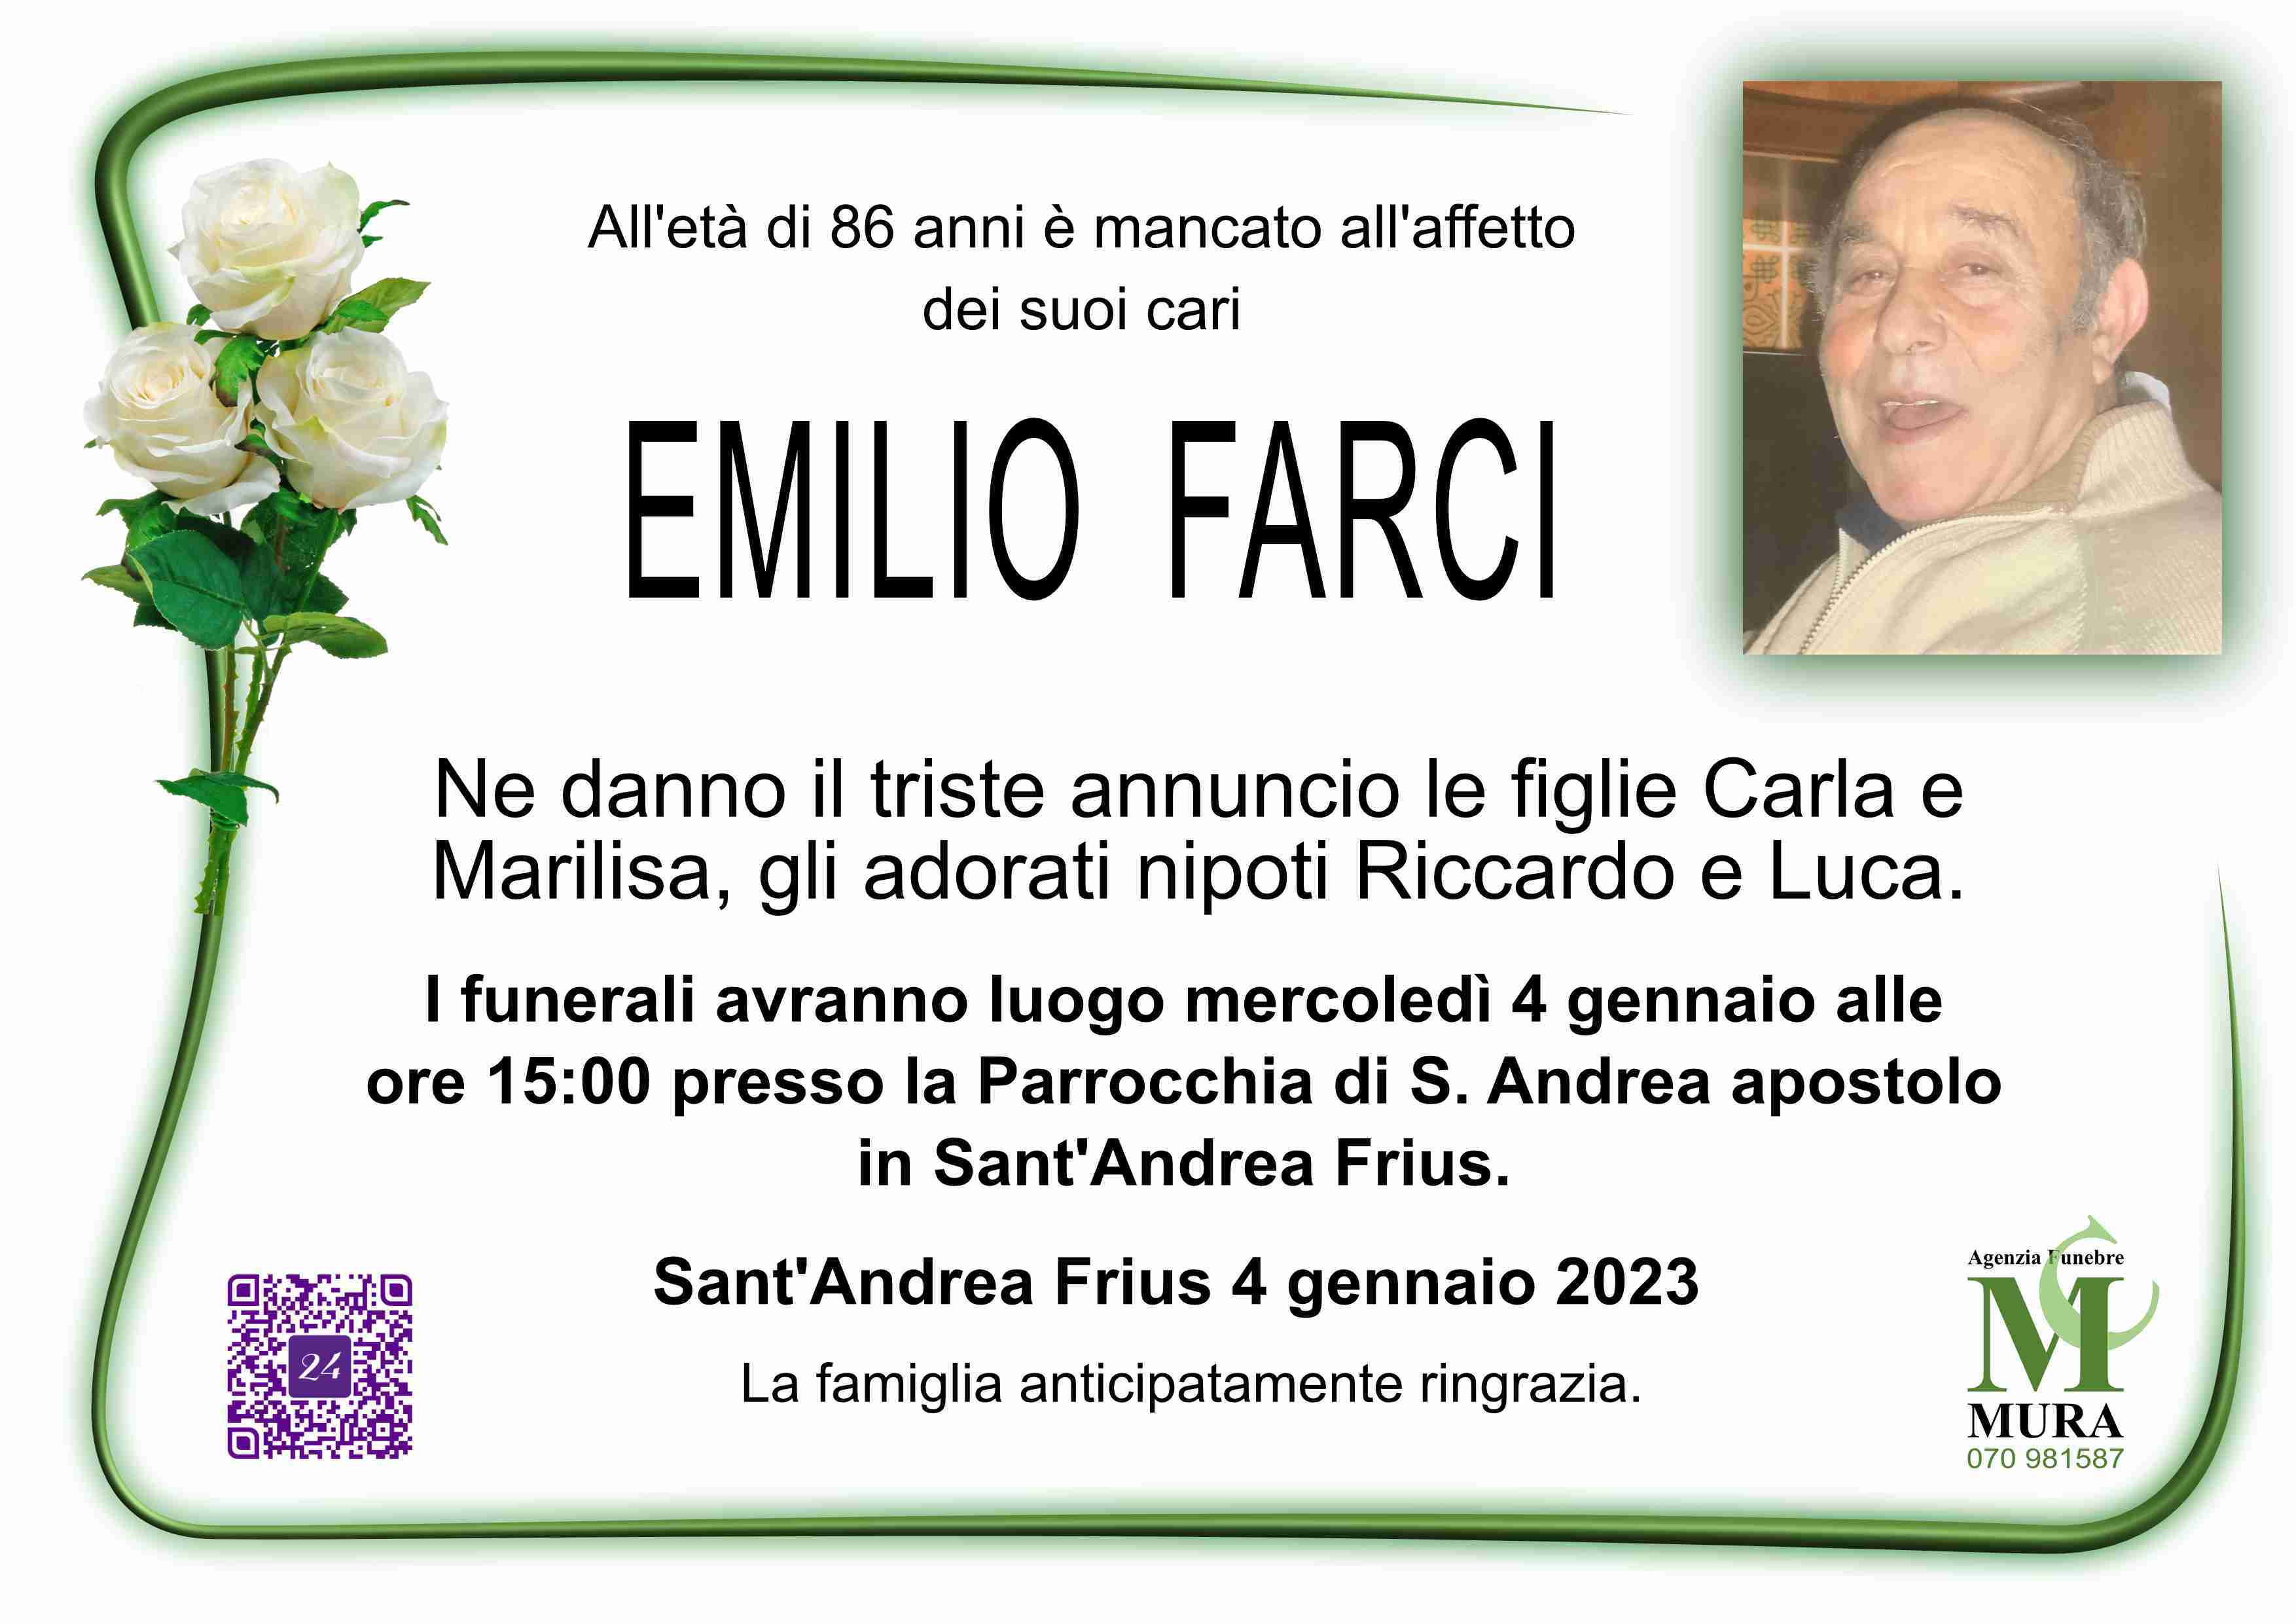 Emilio Farci